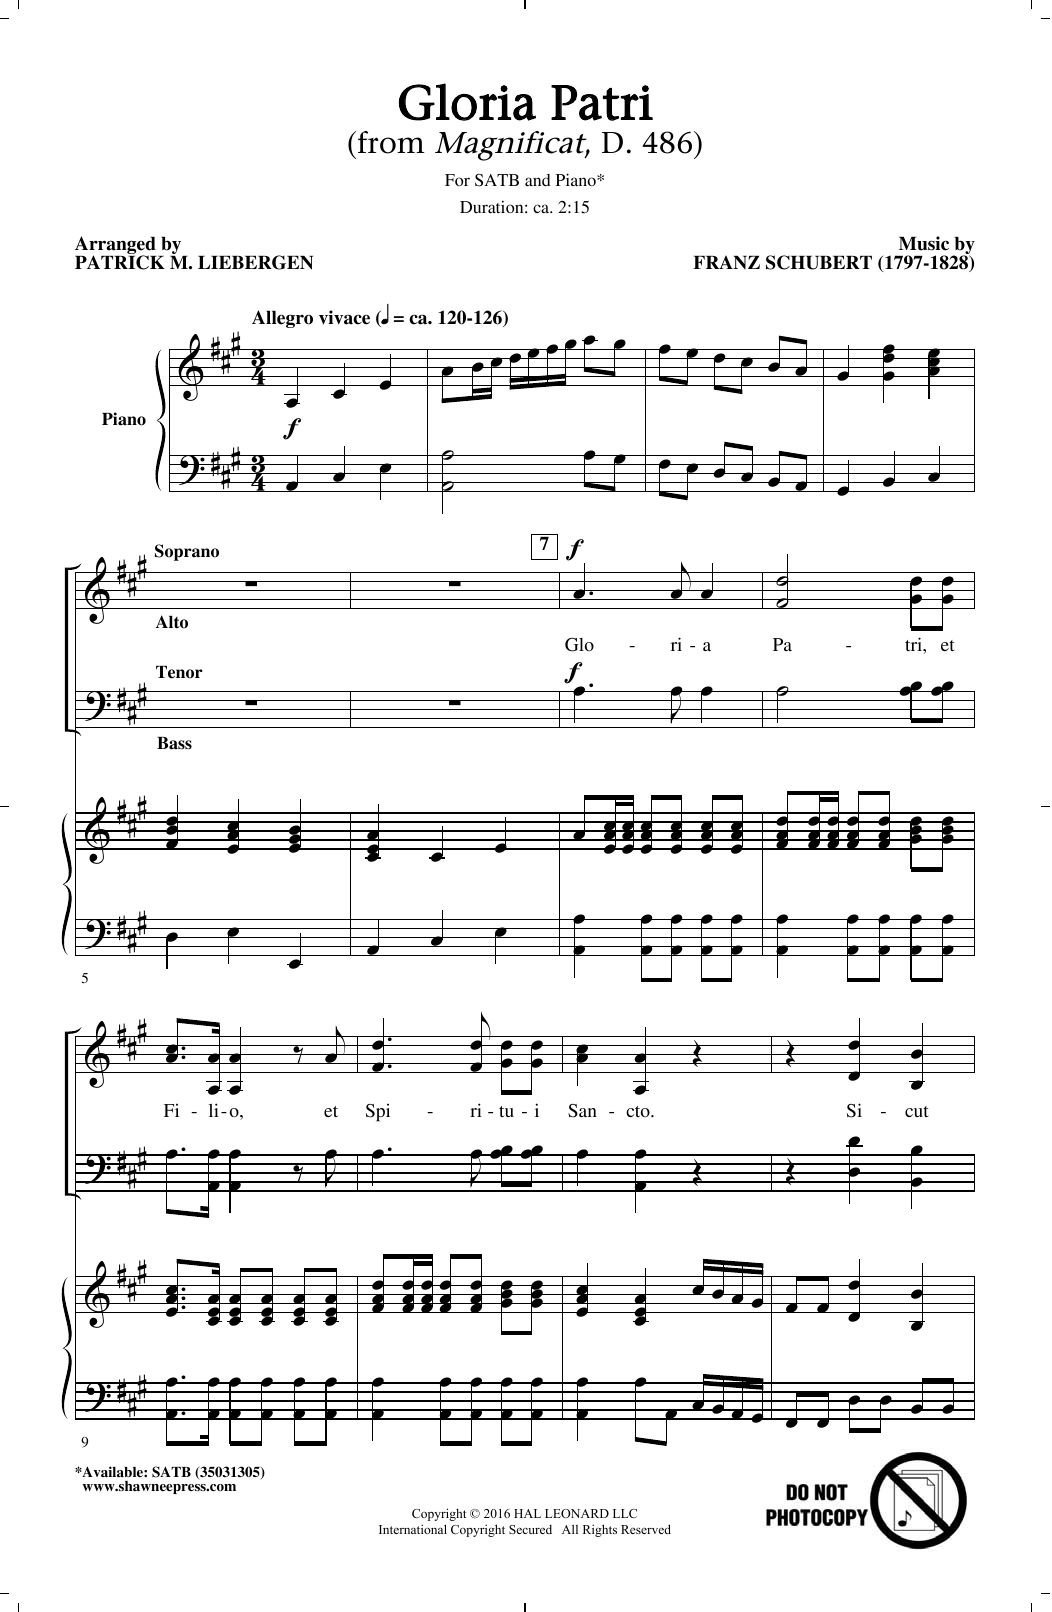 Gloria Patri (SATB Choir) von Patrick M. Liebergen